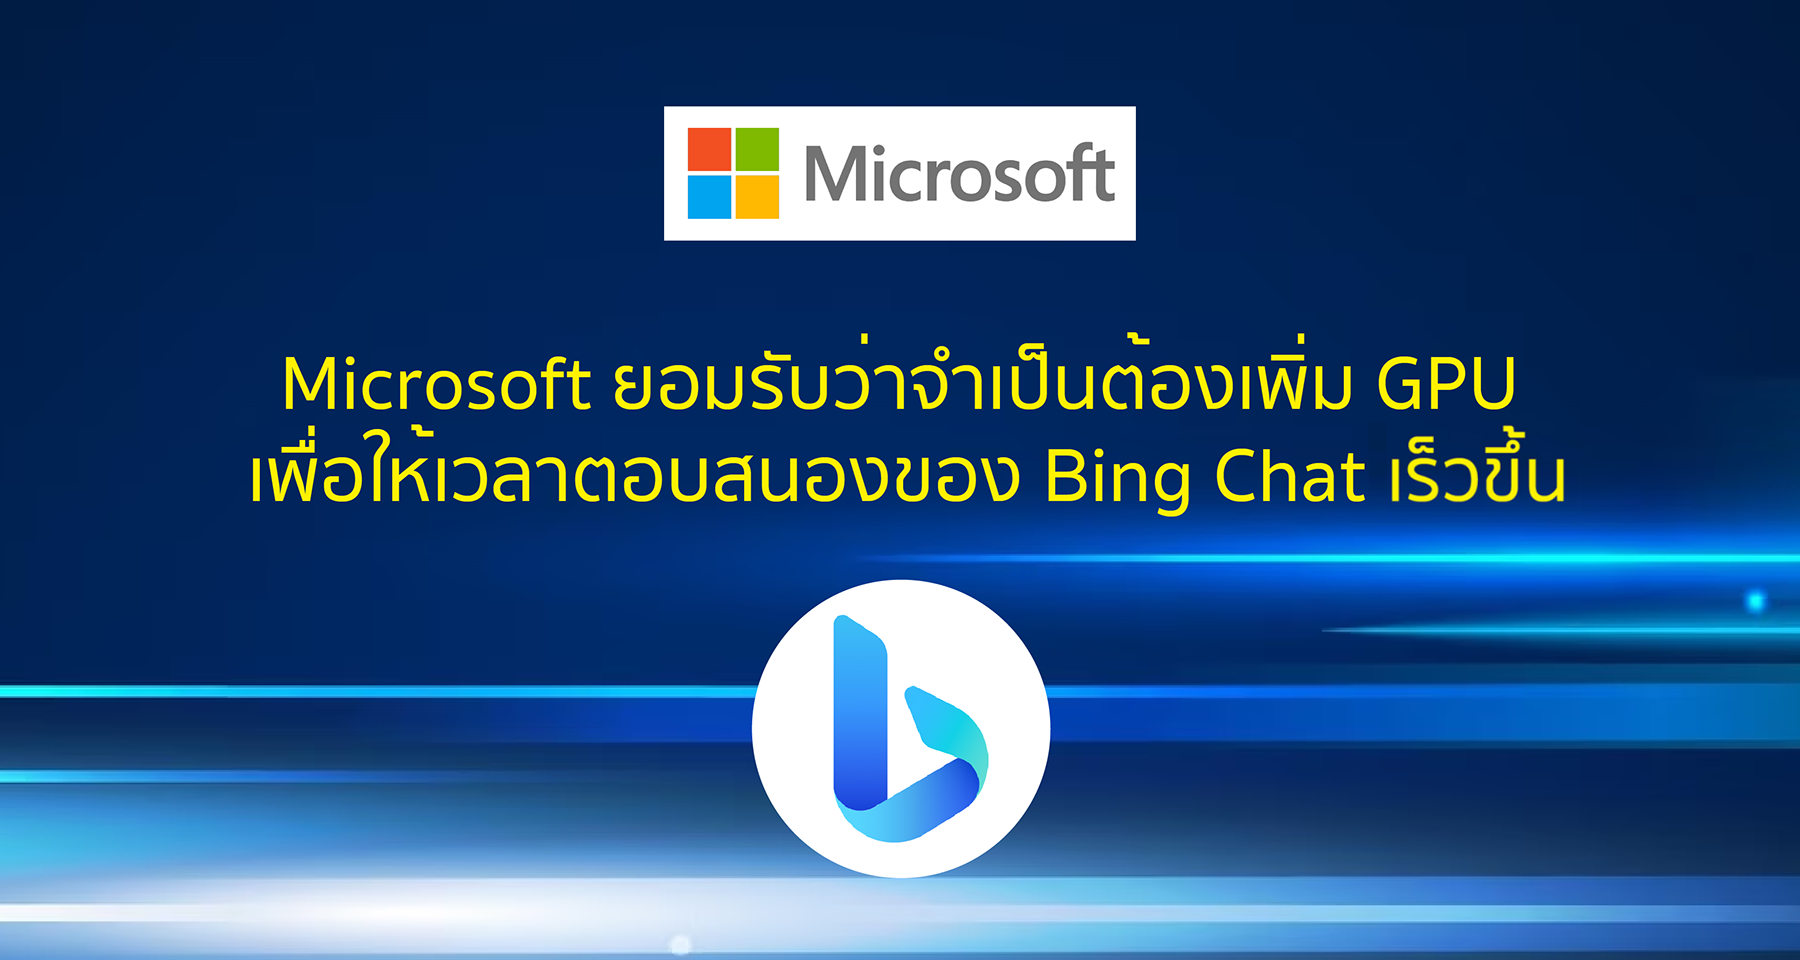 Microsoft ยอมรับว่าจำเป็นต้องเพิ่ม GPU เพื่อให้เวลาตอบสนองของ Bing Chat เร็วขึ้น